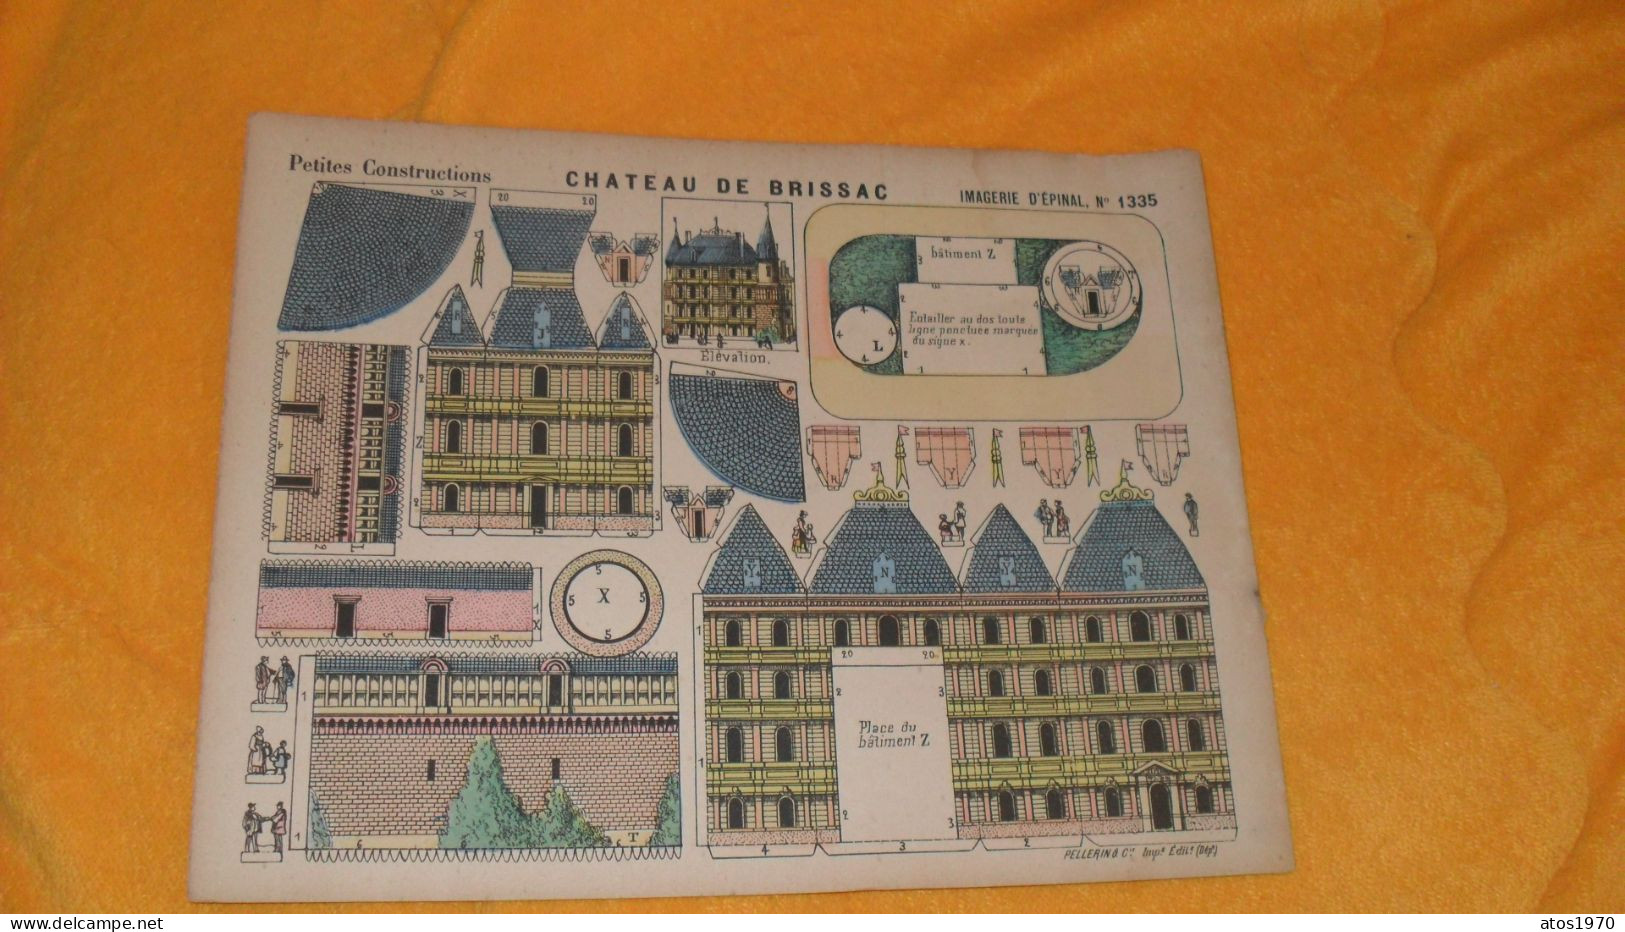 PETITES CONSTRUCTIONS CHATEAU DE BRISSAC IMAGERIE D'EPINAL N°1335 - Architektur